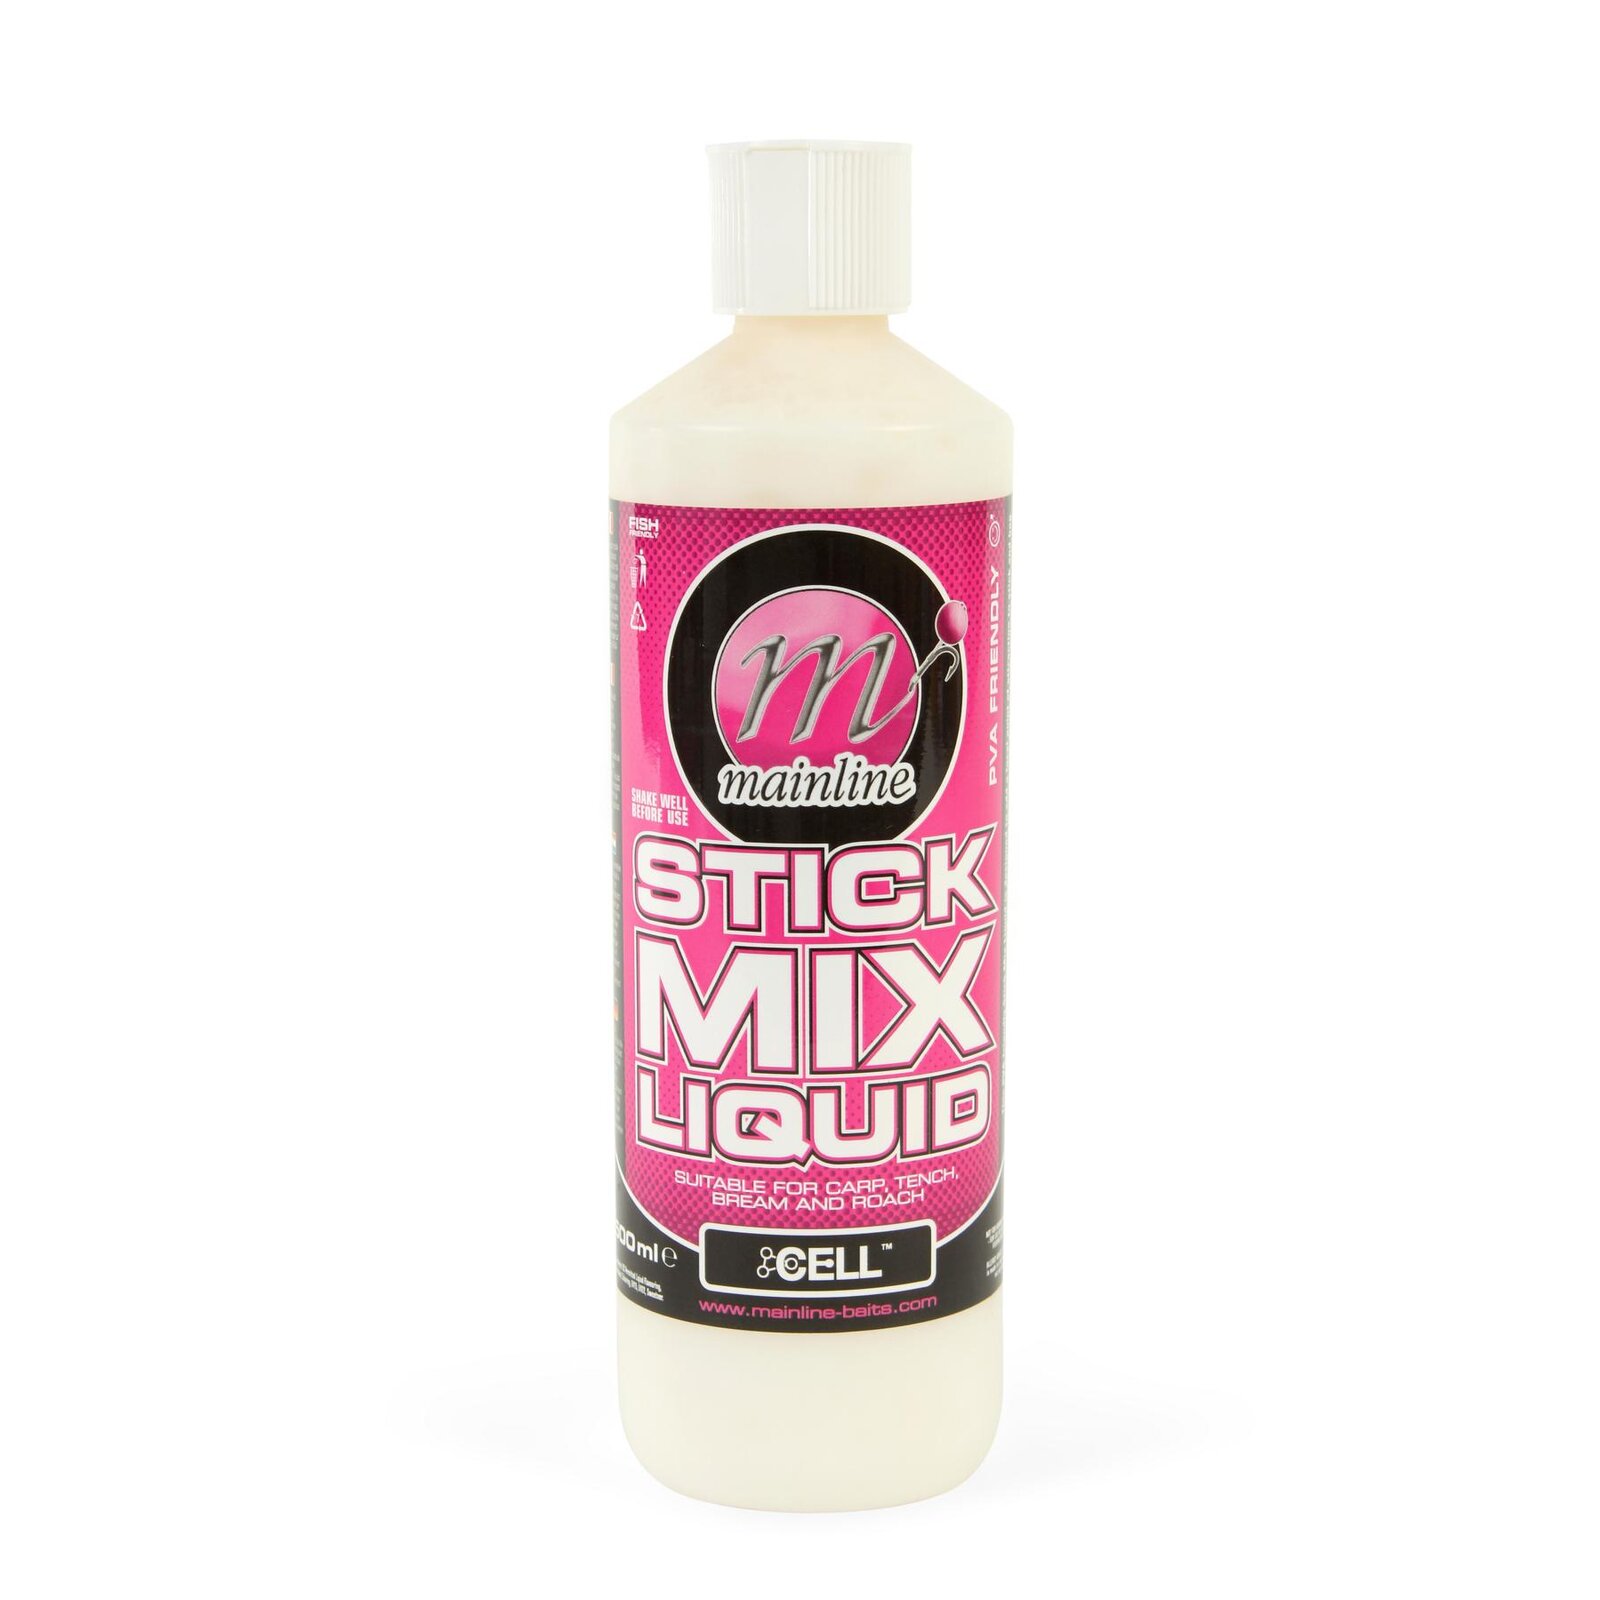 Mainline Stick Mix Liquid - Cell - 500 ml Bottle